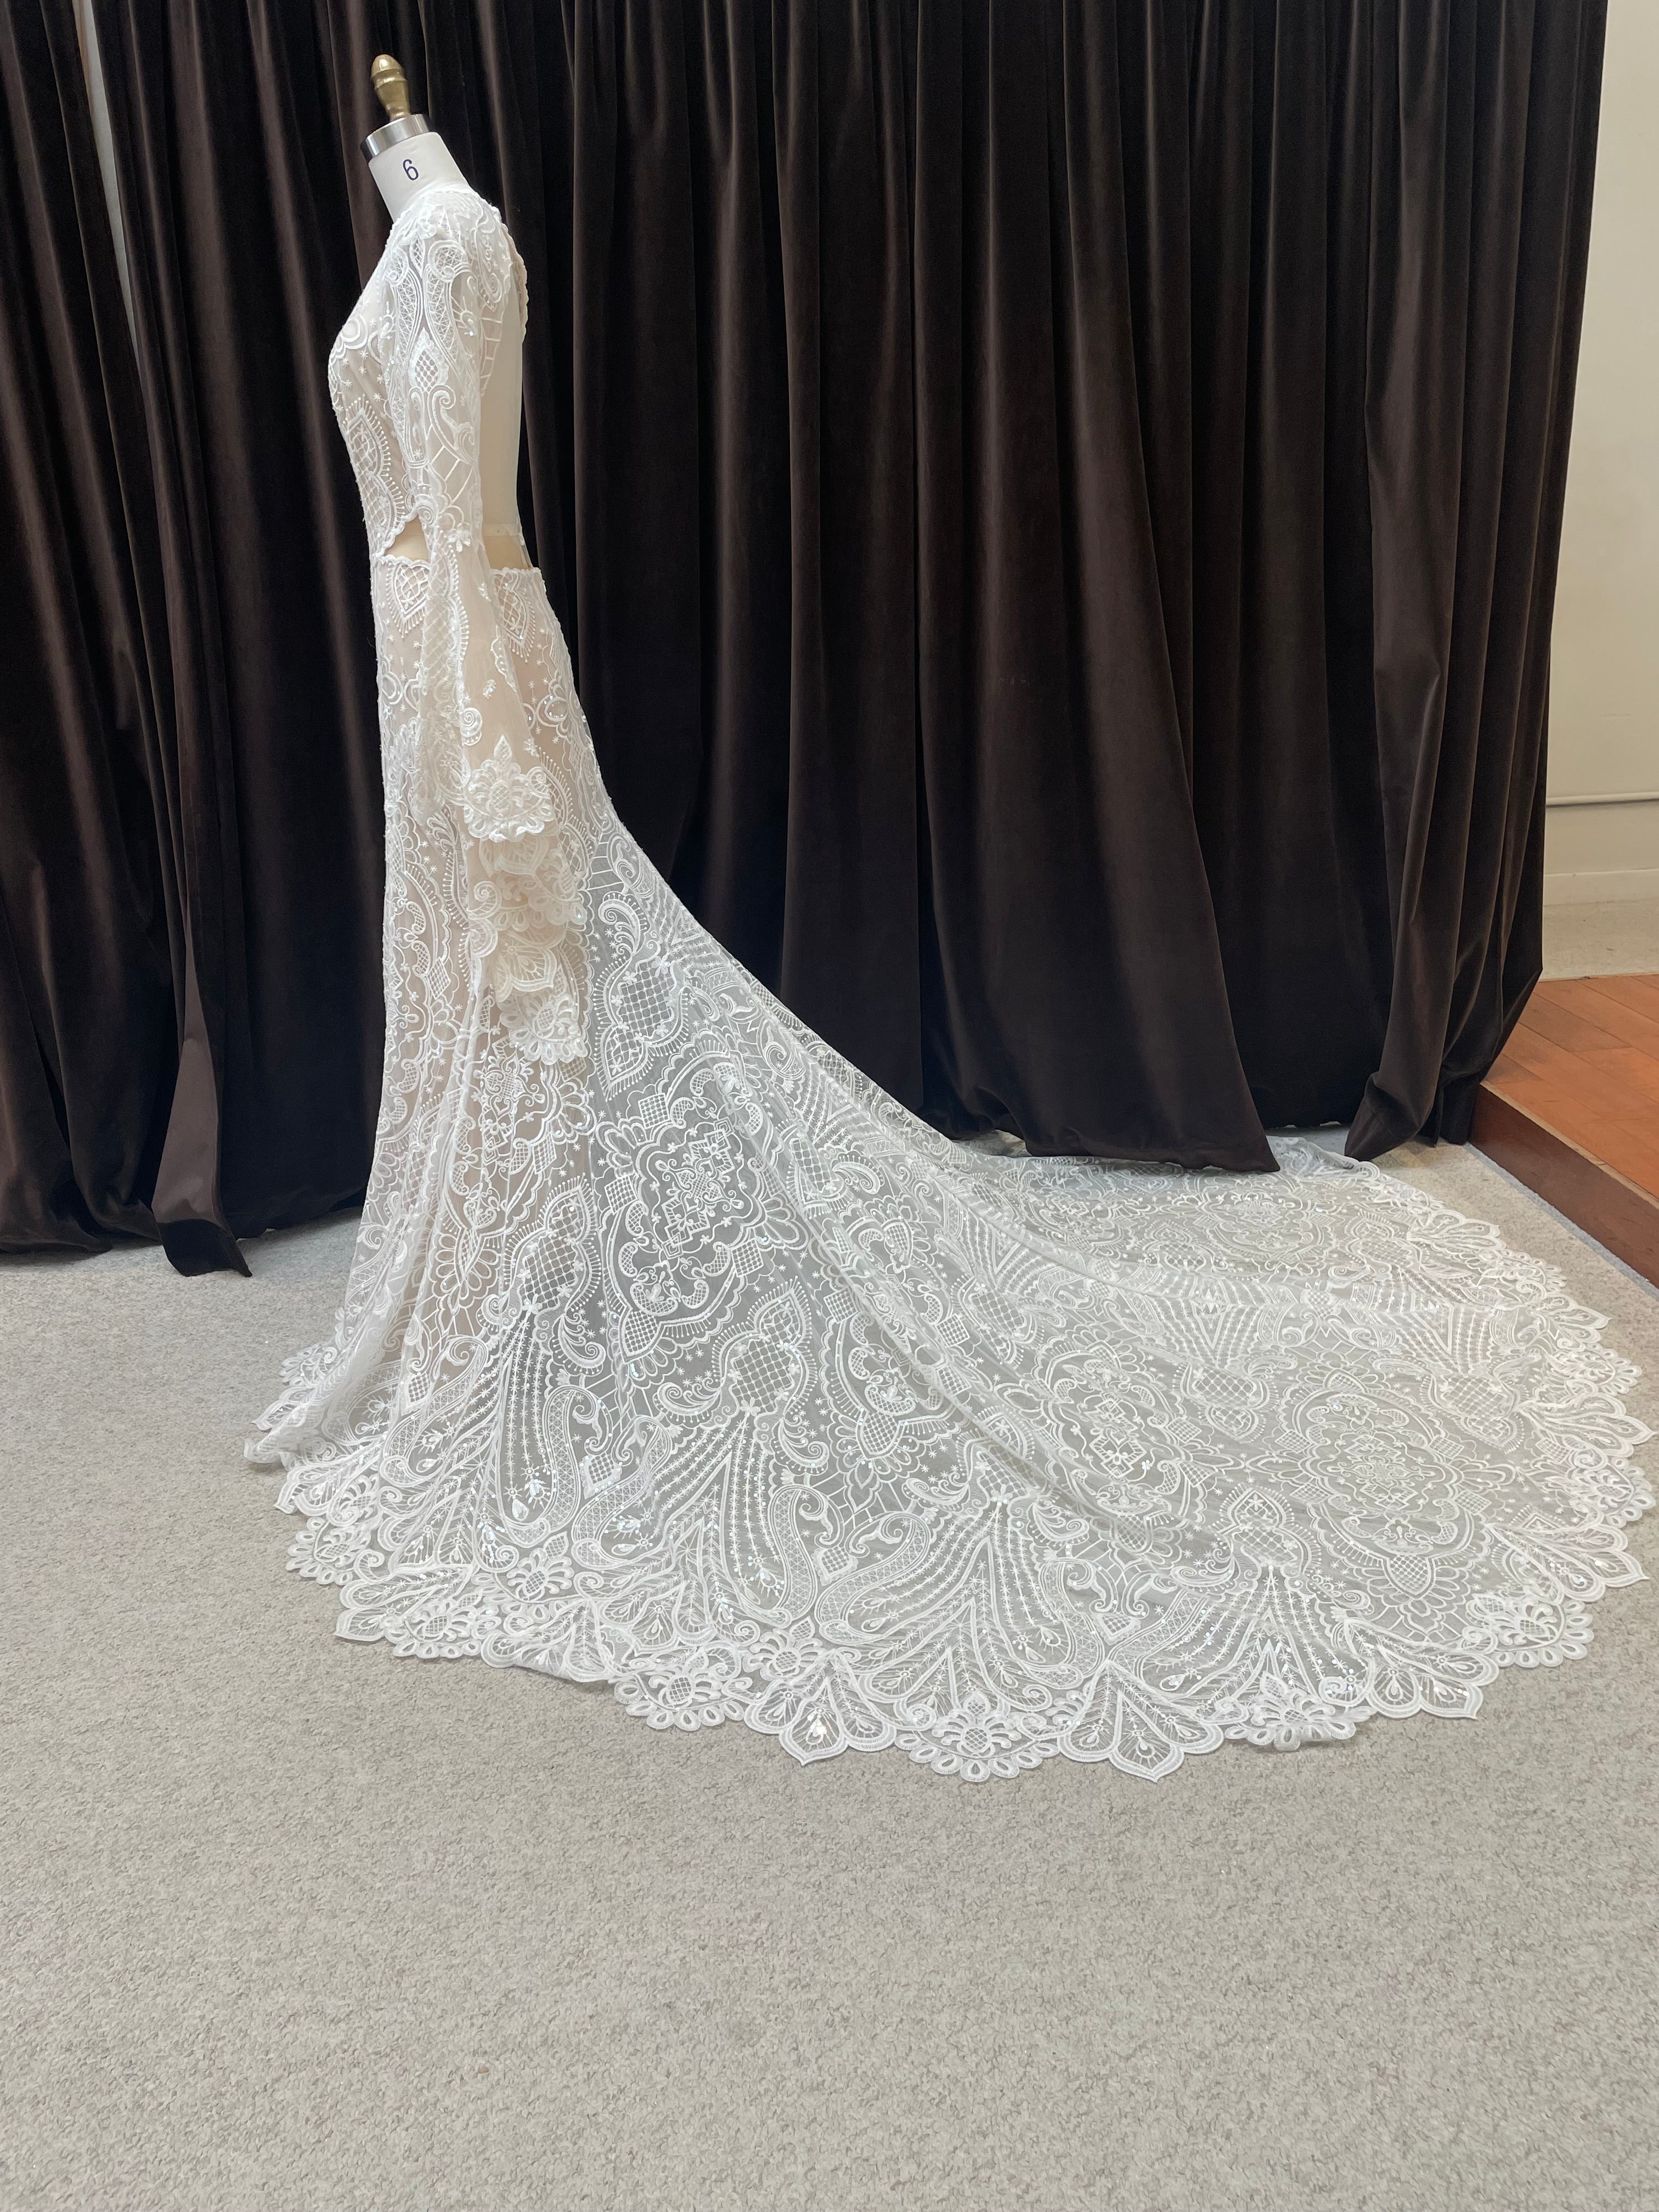 GC#33756 - La Perle Noor Wedding Dress in Size 12